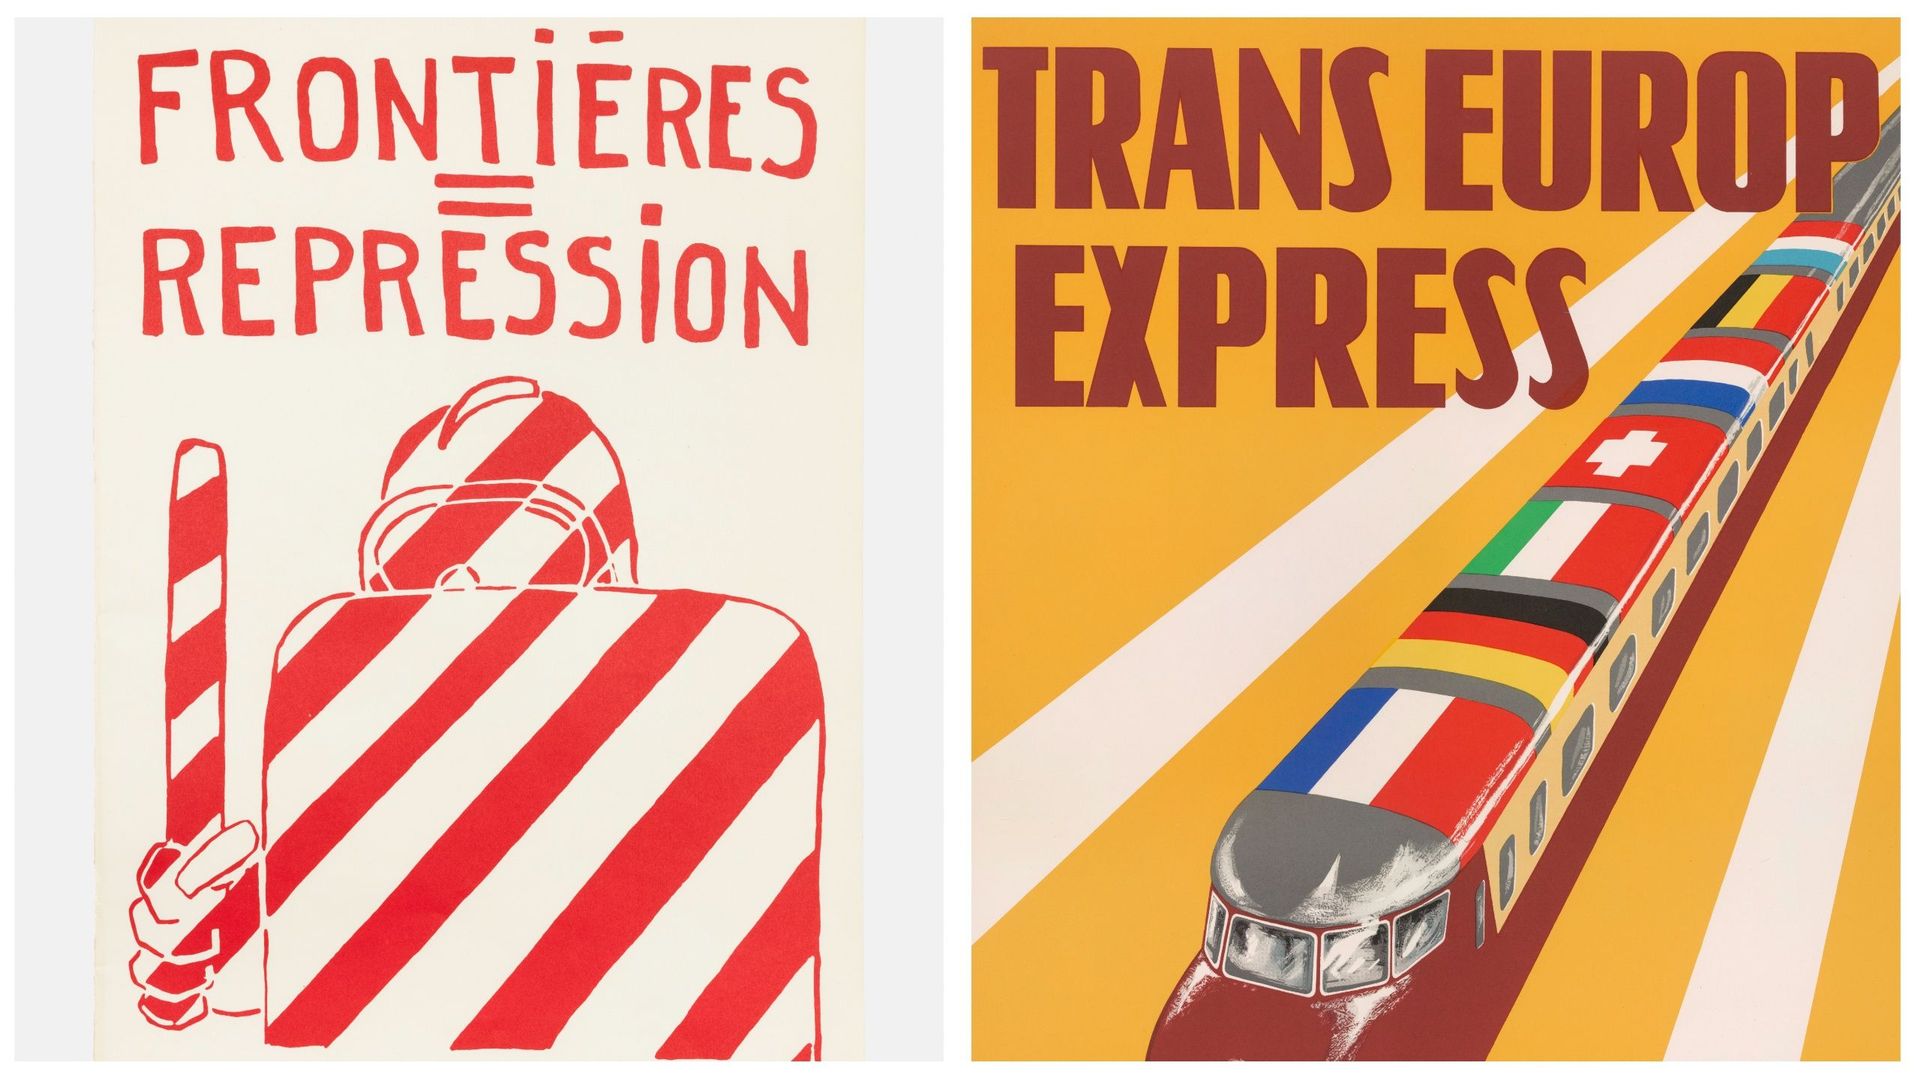 Frontières = Répression, Atelier populaire Paris- May 1968 et Trans Europ Express, Jan Rodrigo Pays-bas - 1957

